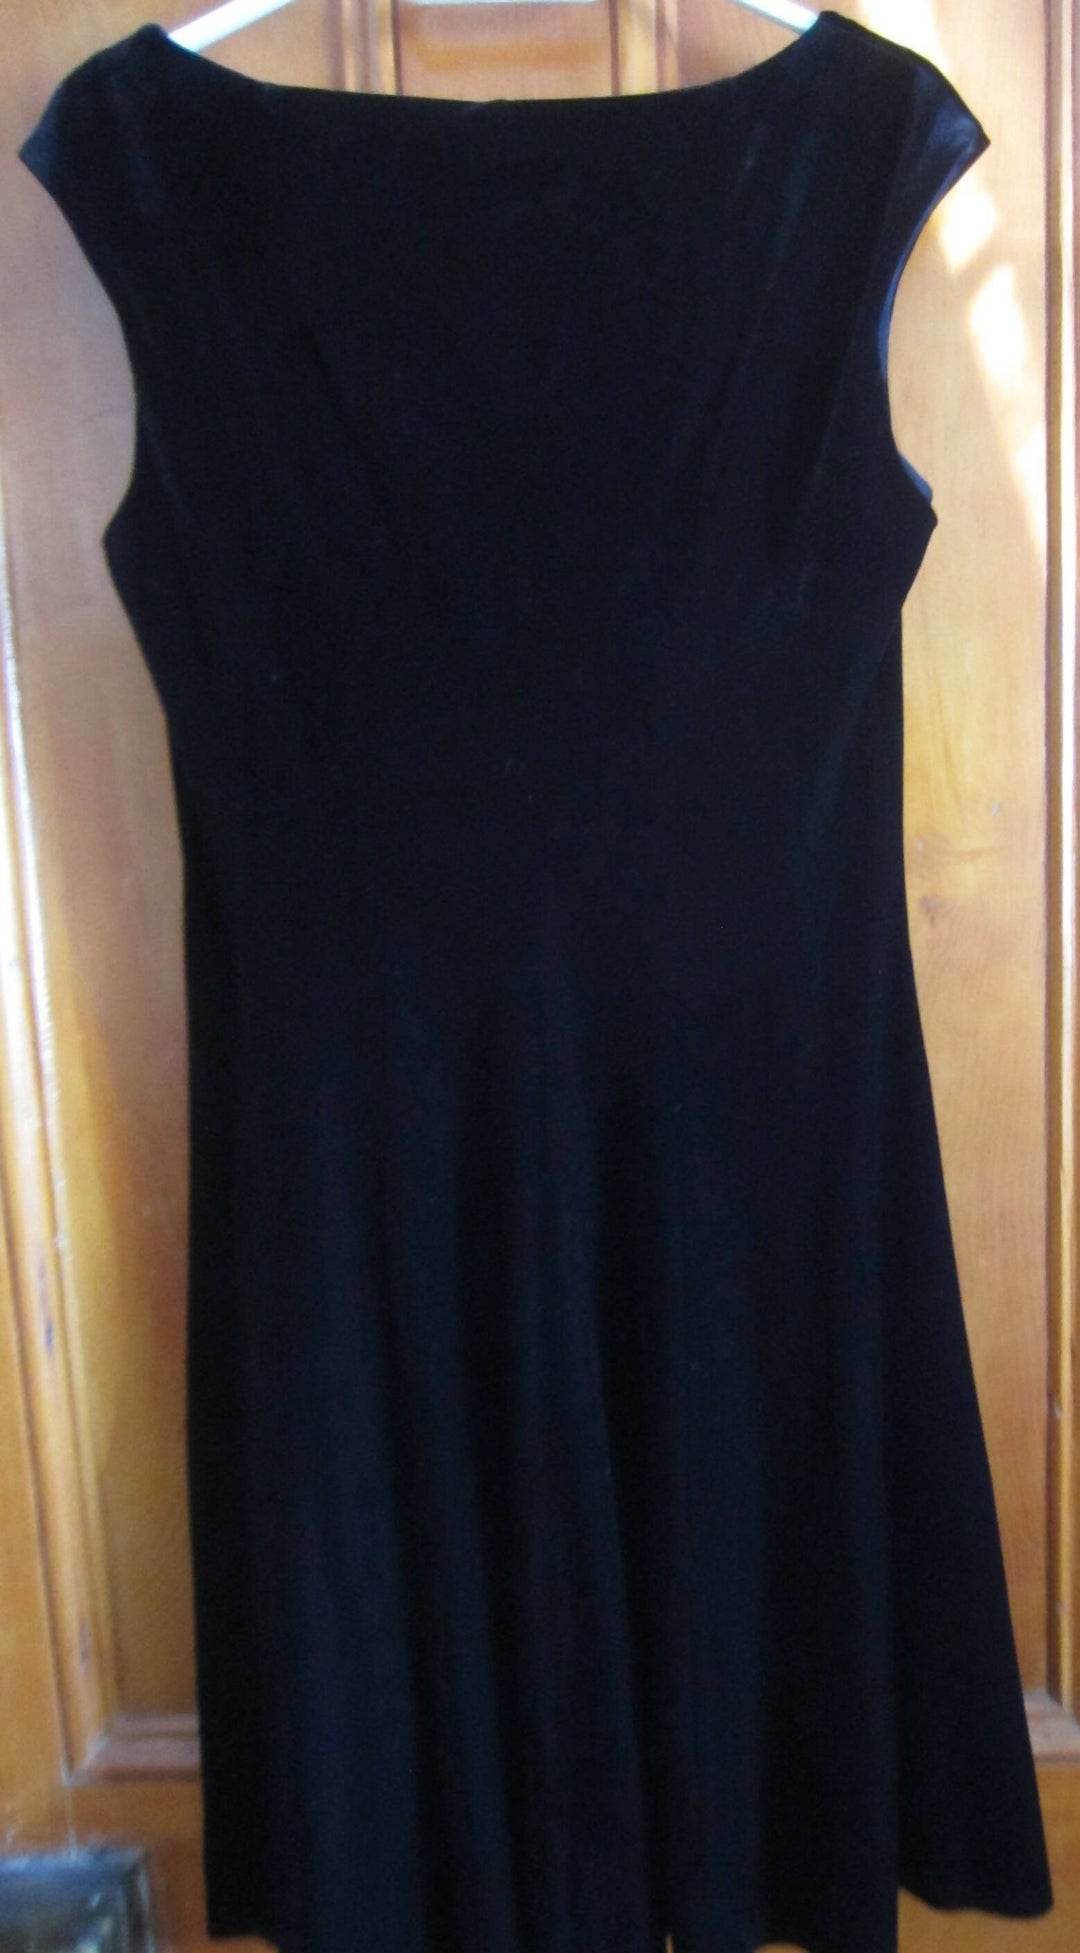 Image of Black Velvet Sleeveless Dress - Size 12 / M